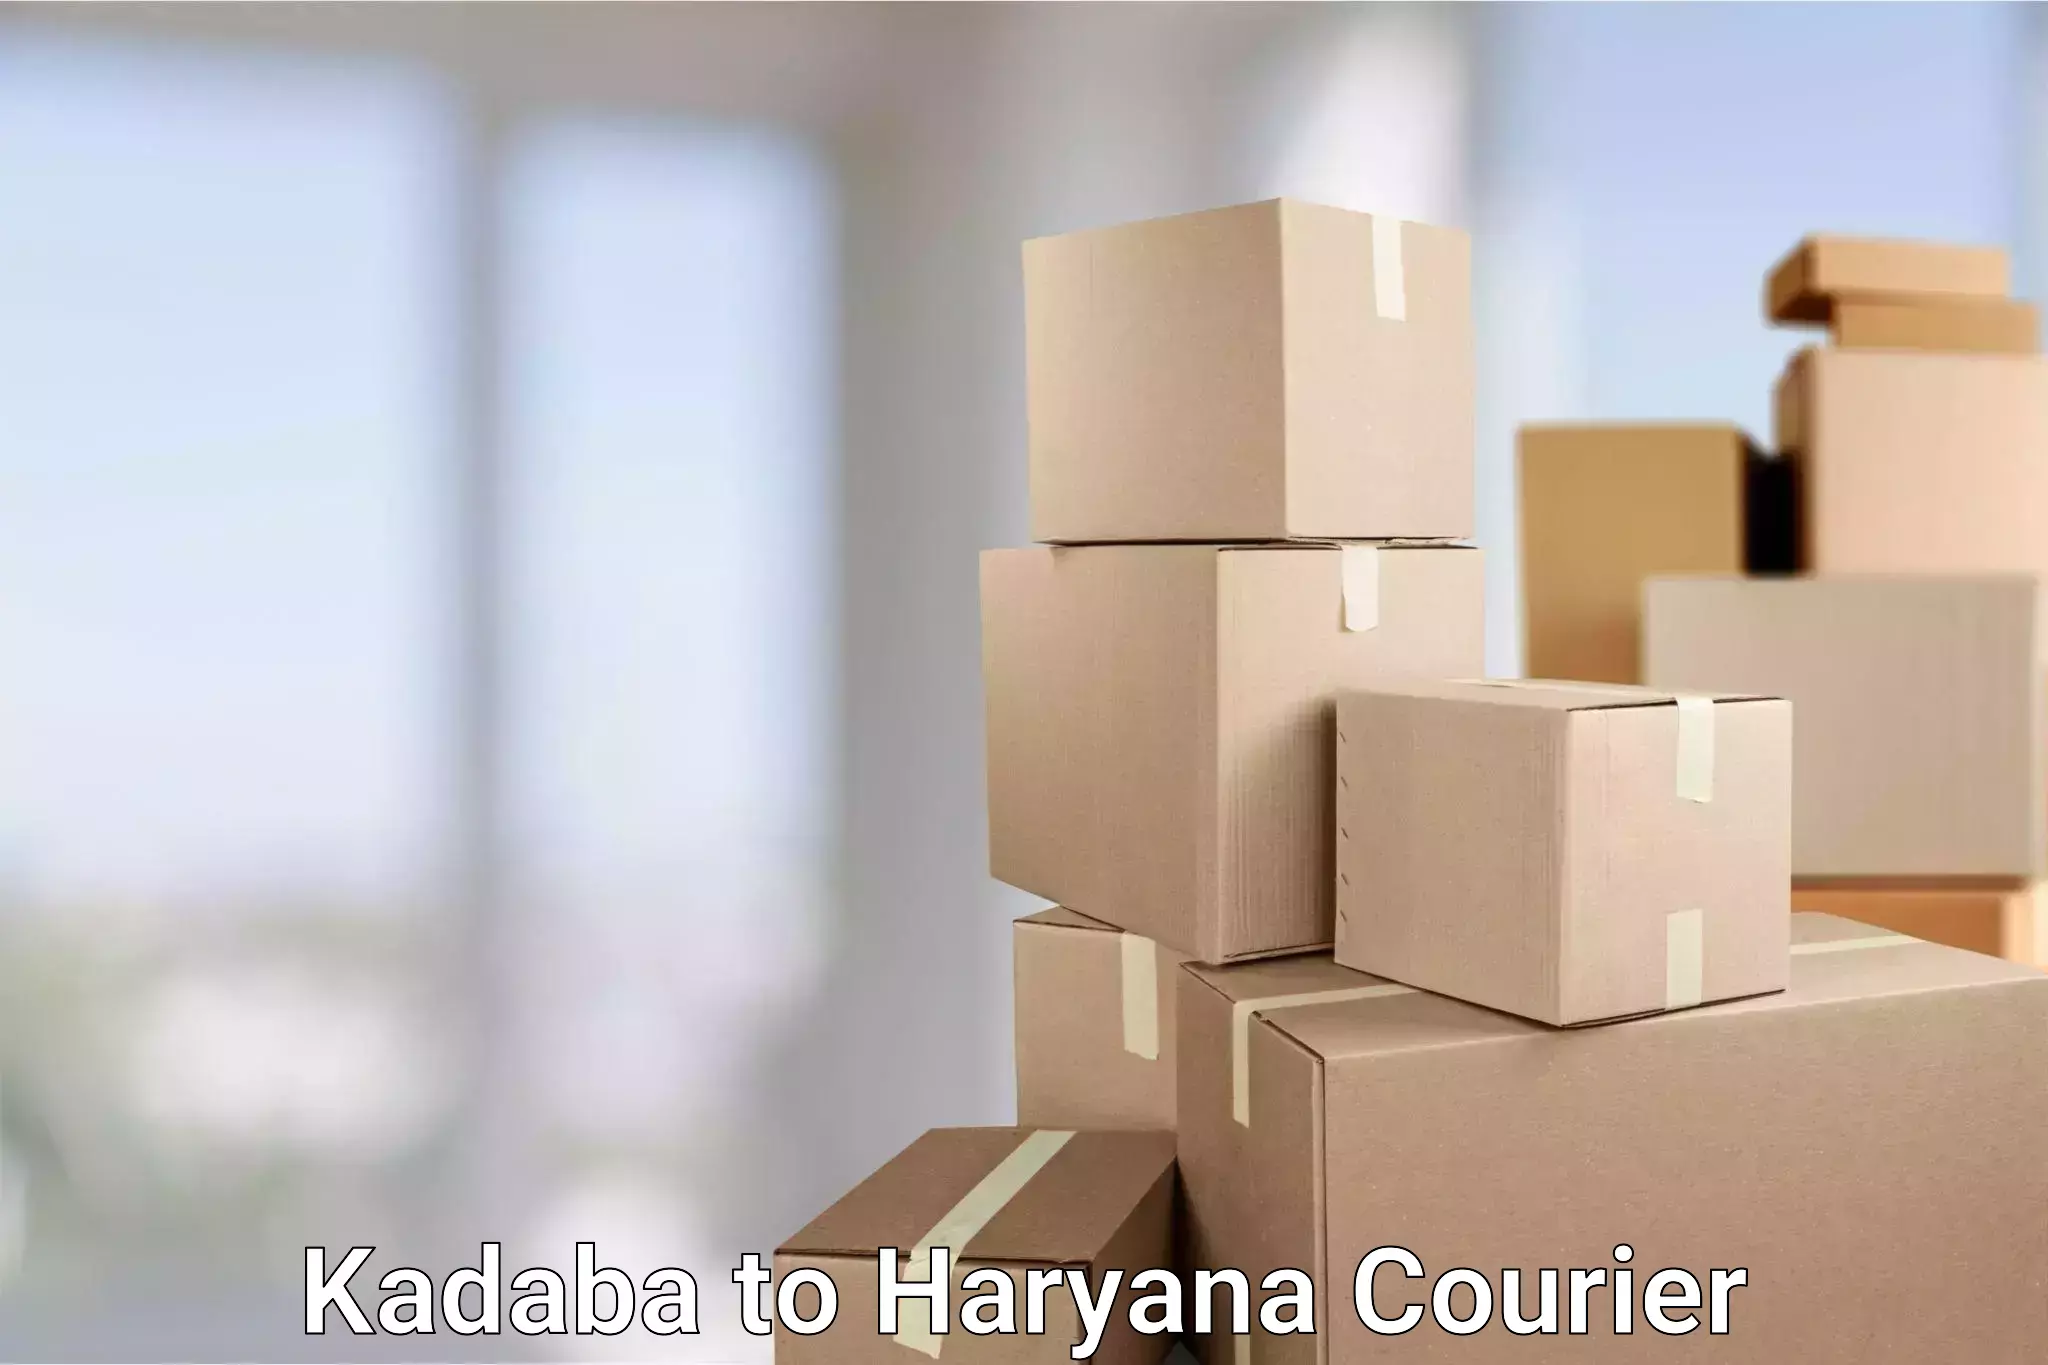 Express package handling Kadaba to Haryana